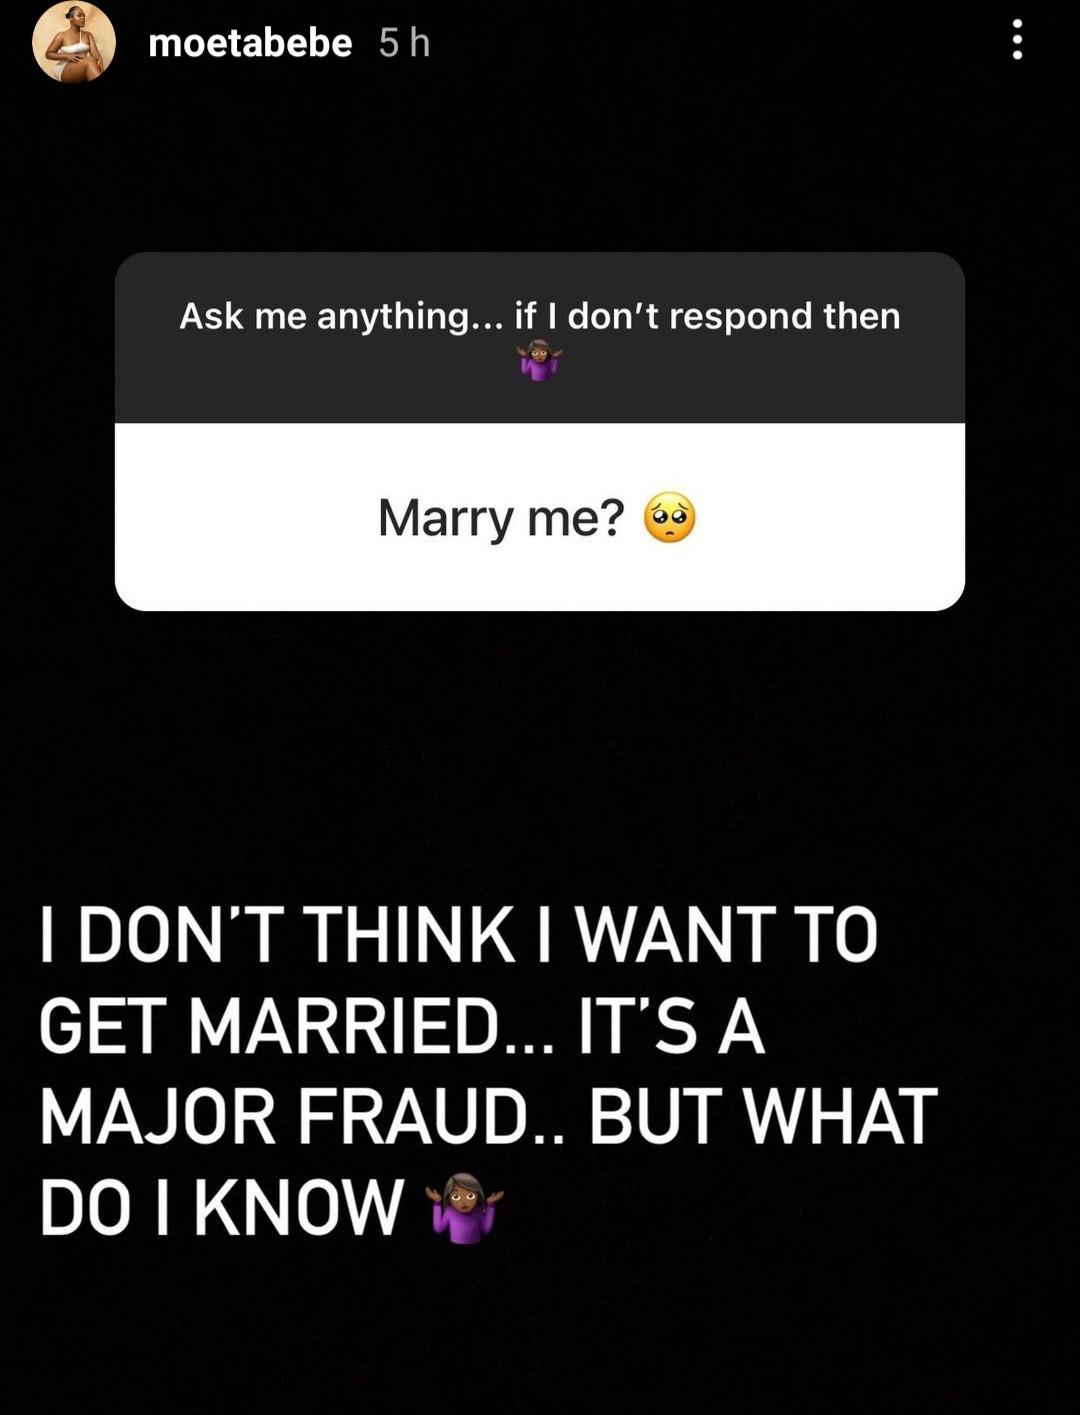 Moet Abebe marriage fraud